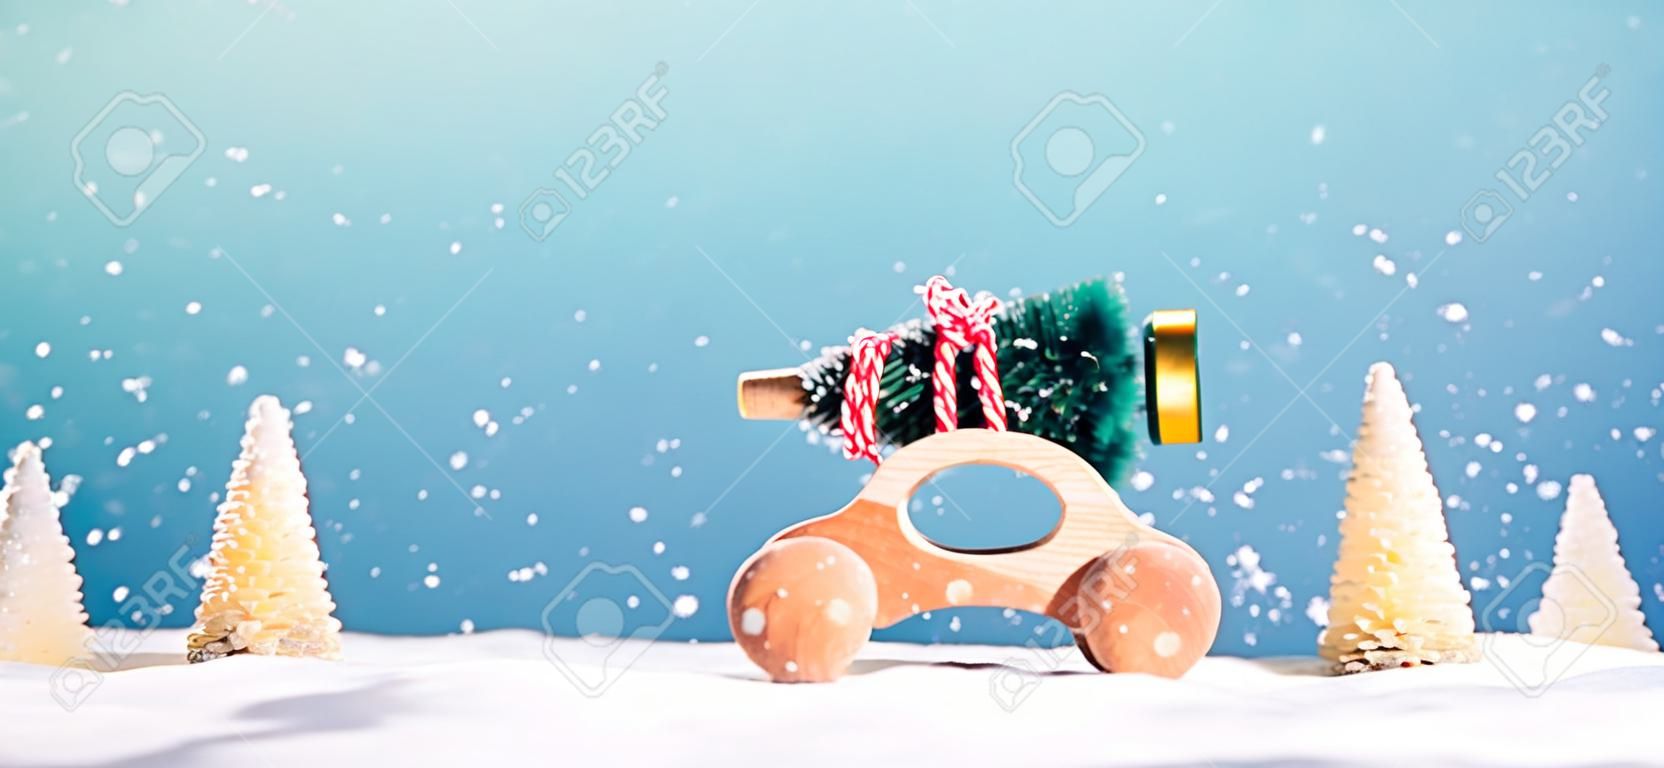 Hölzernes Miniaturauto, das einen Weihnachtsbaum auf einem blauen Hintergrund trägt